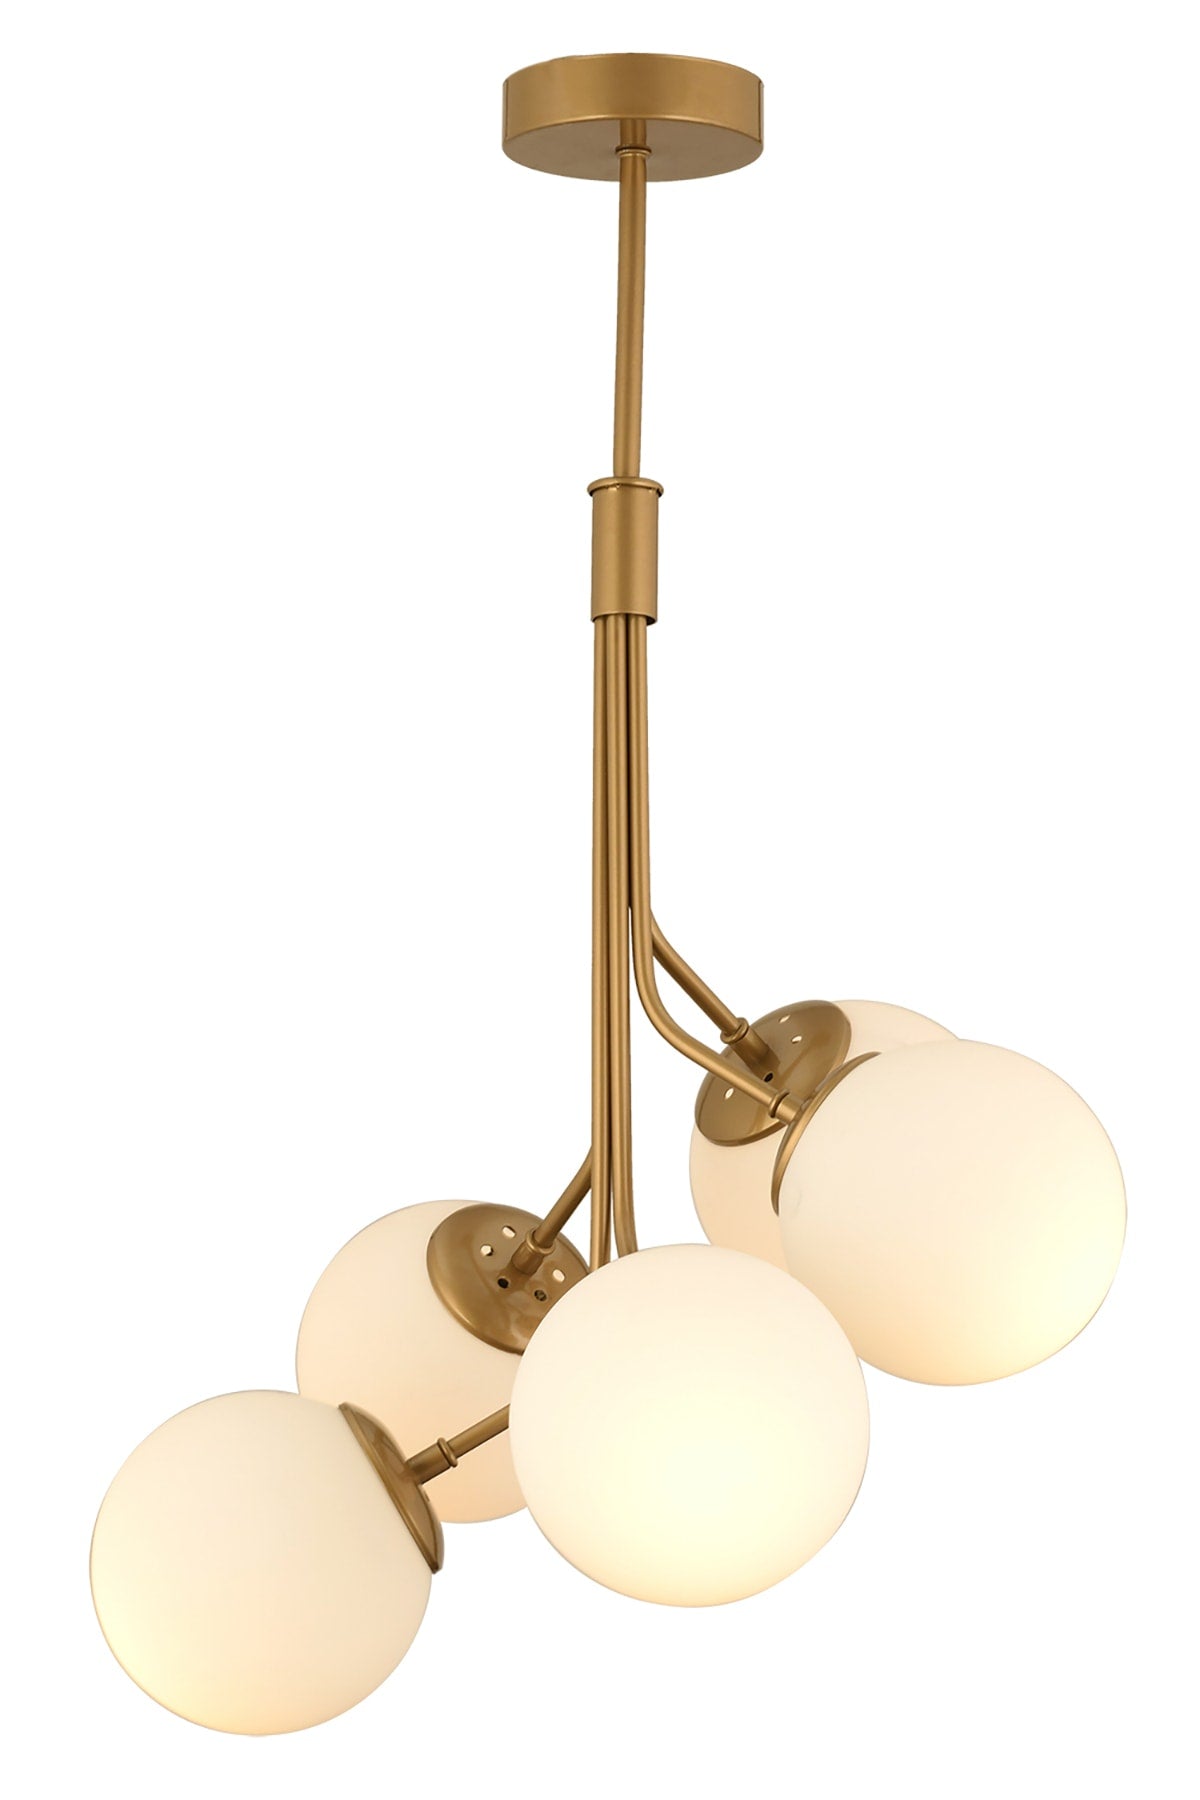 Artel 5-Piece Antique Modern Pendant Lamp, Kitchen Bedroom Living Room Chandelier